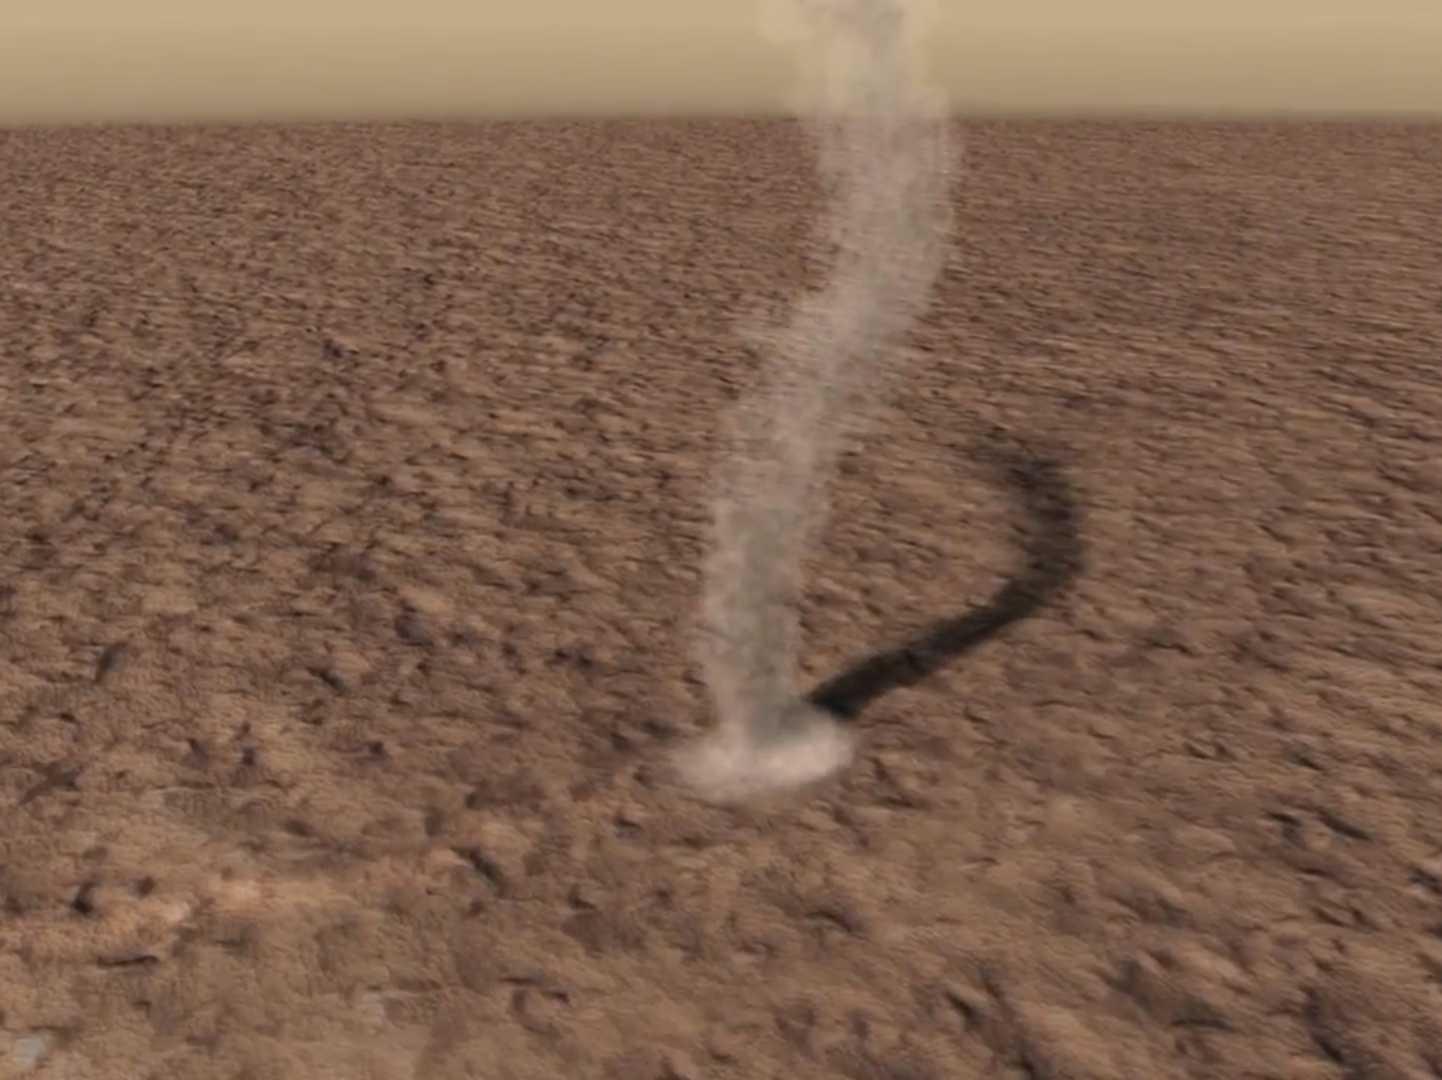 Porördög a Curiosity marsjáró felvételén